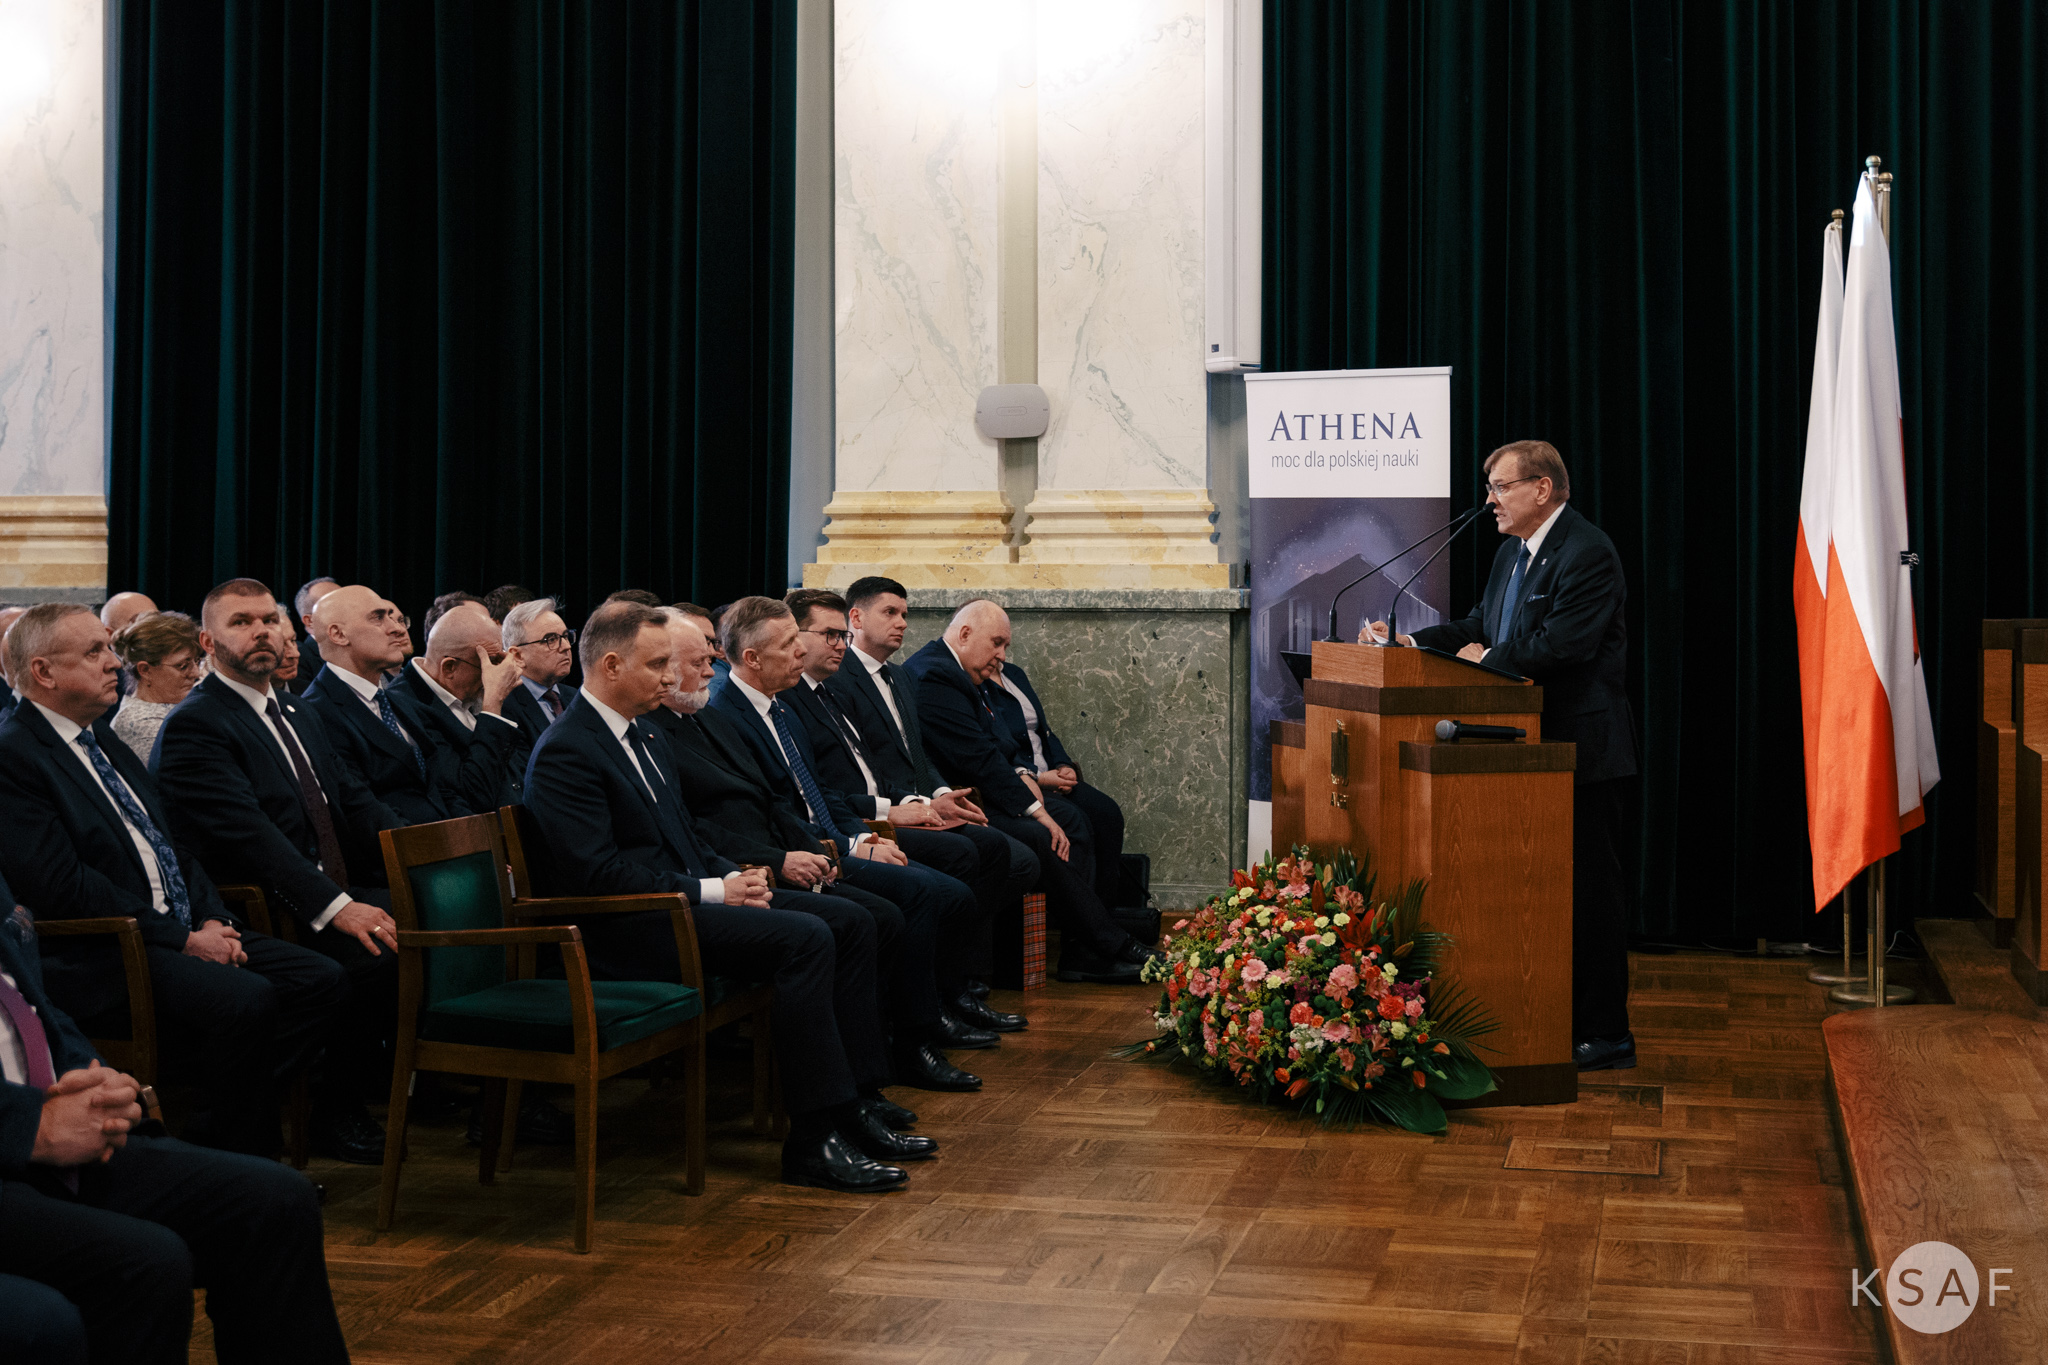 Zdjęcie przedstawia mężczyznę stojącego przy mównicy i przemawiającego do zgromadzonych w auli gości.